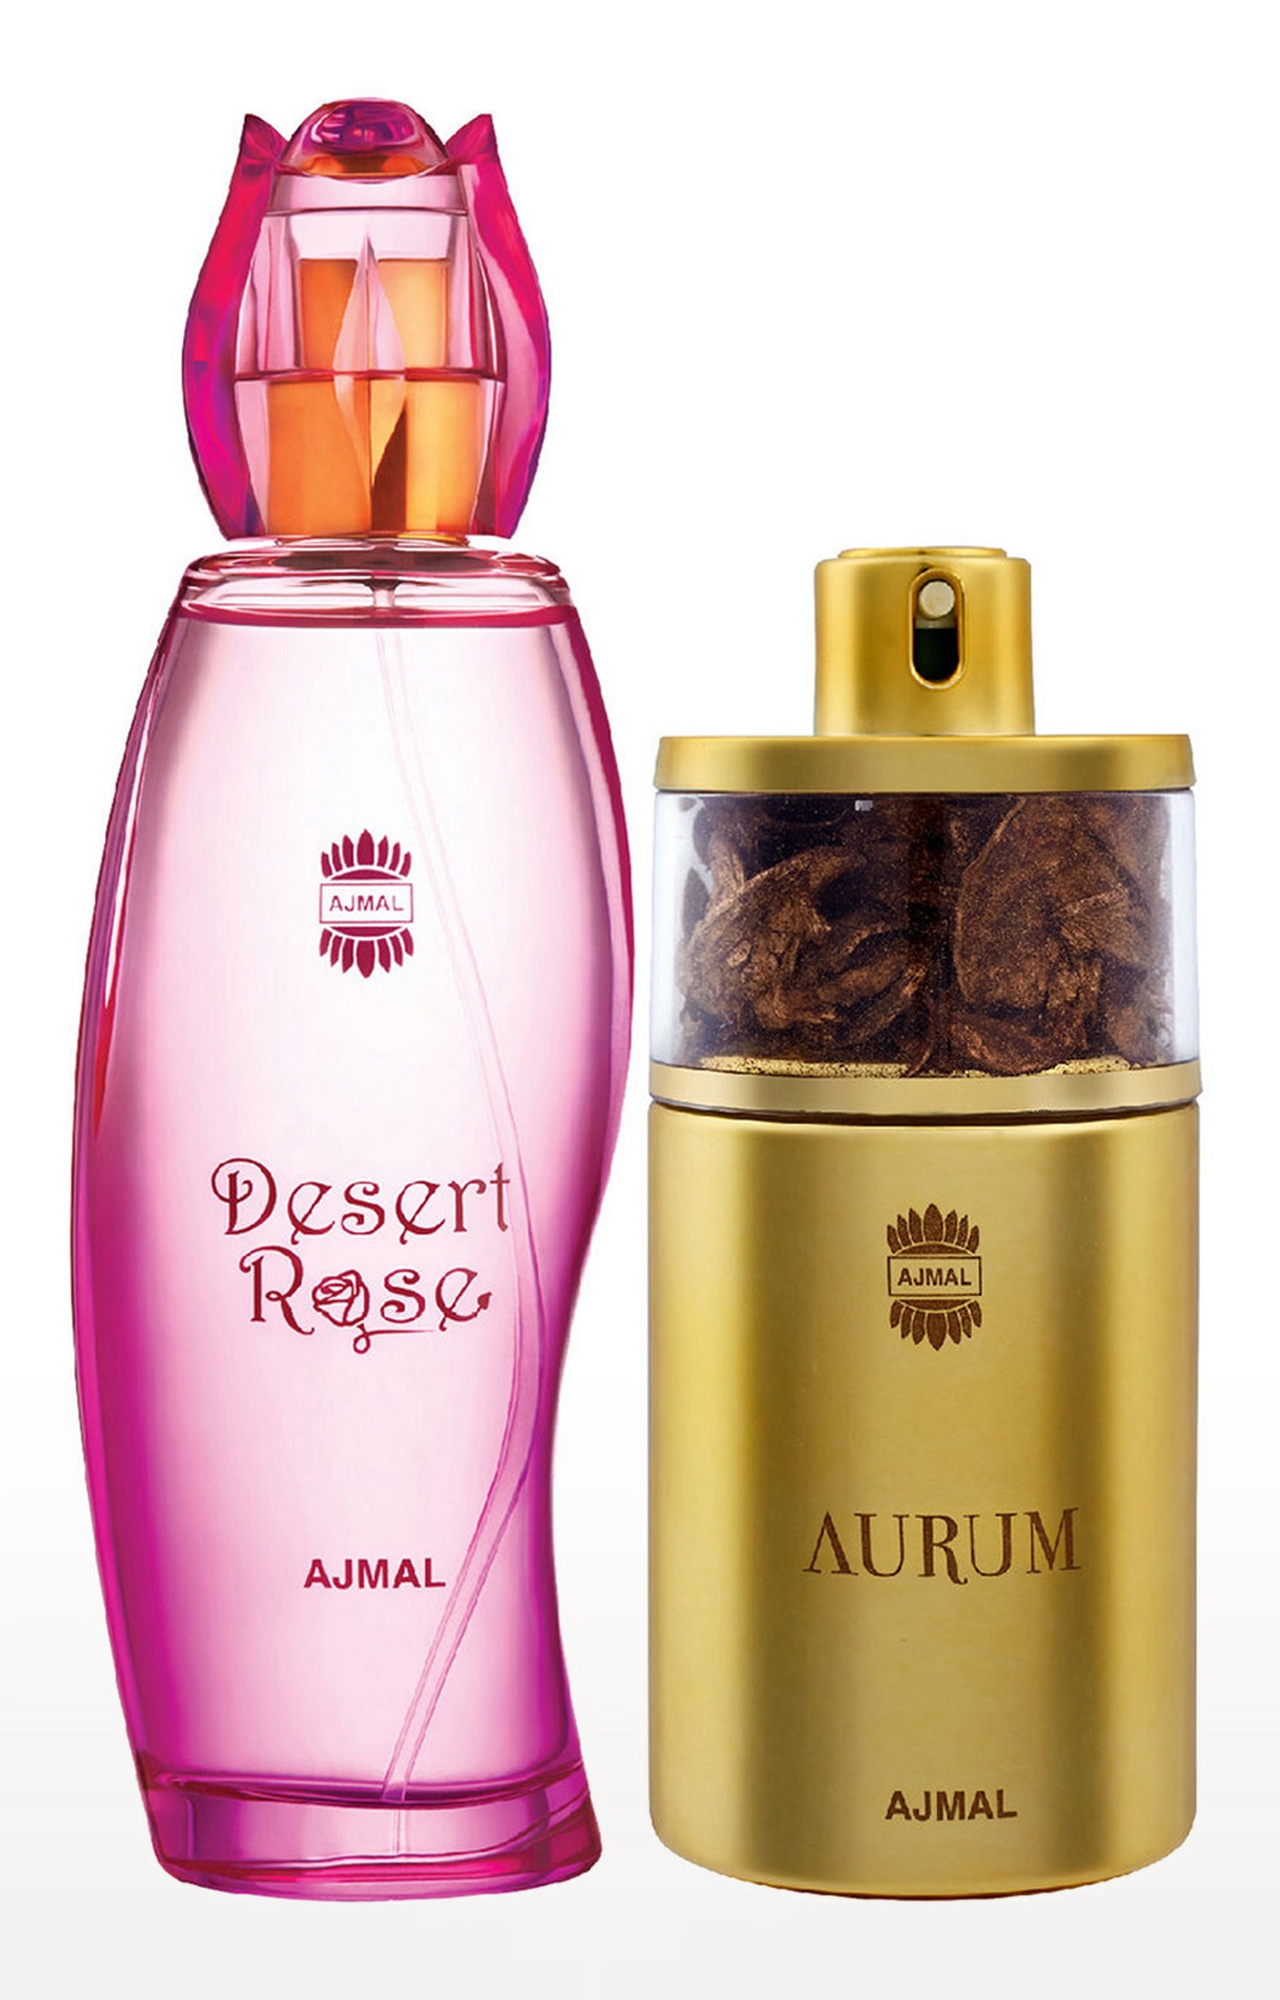 Ajmal Desert Rose EDP Oriental Perfume 100ml for Women and Aurum EDP Fruity Perfume 75ml for Women